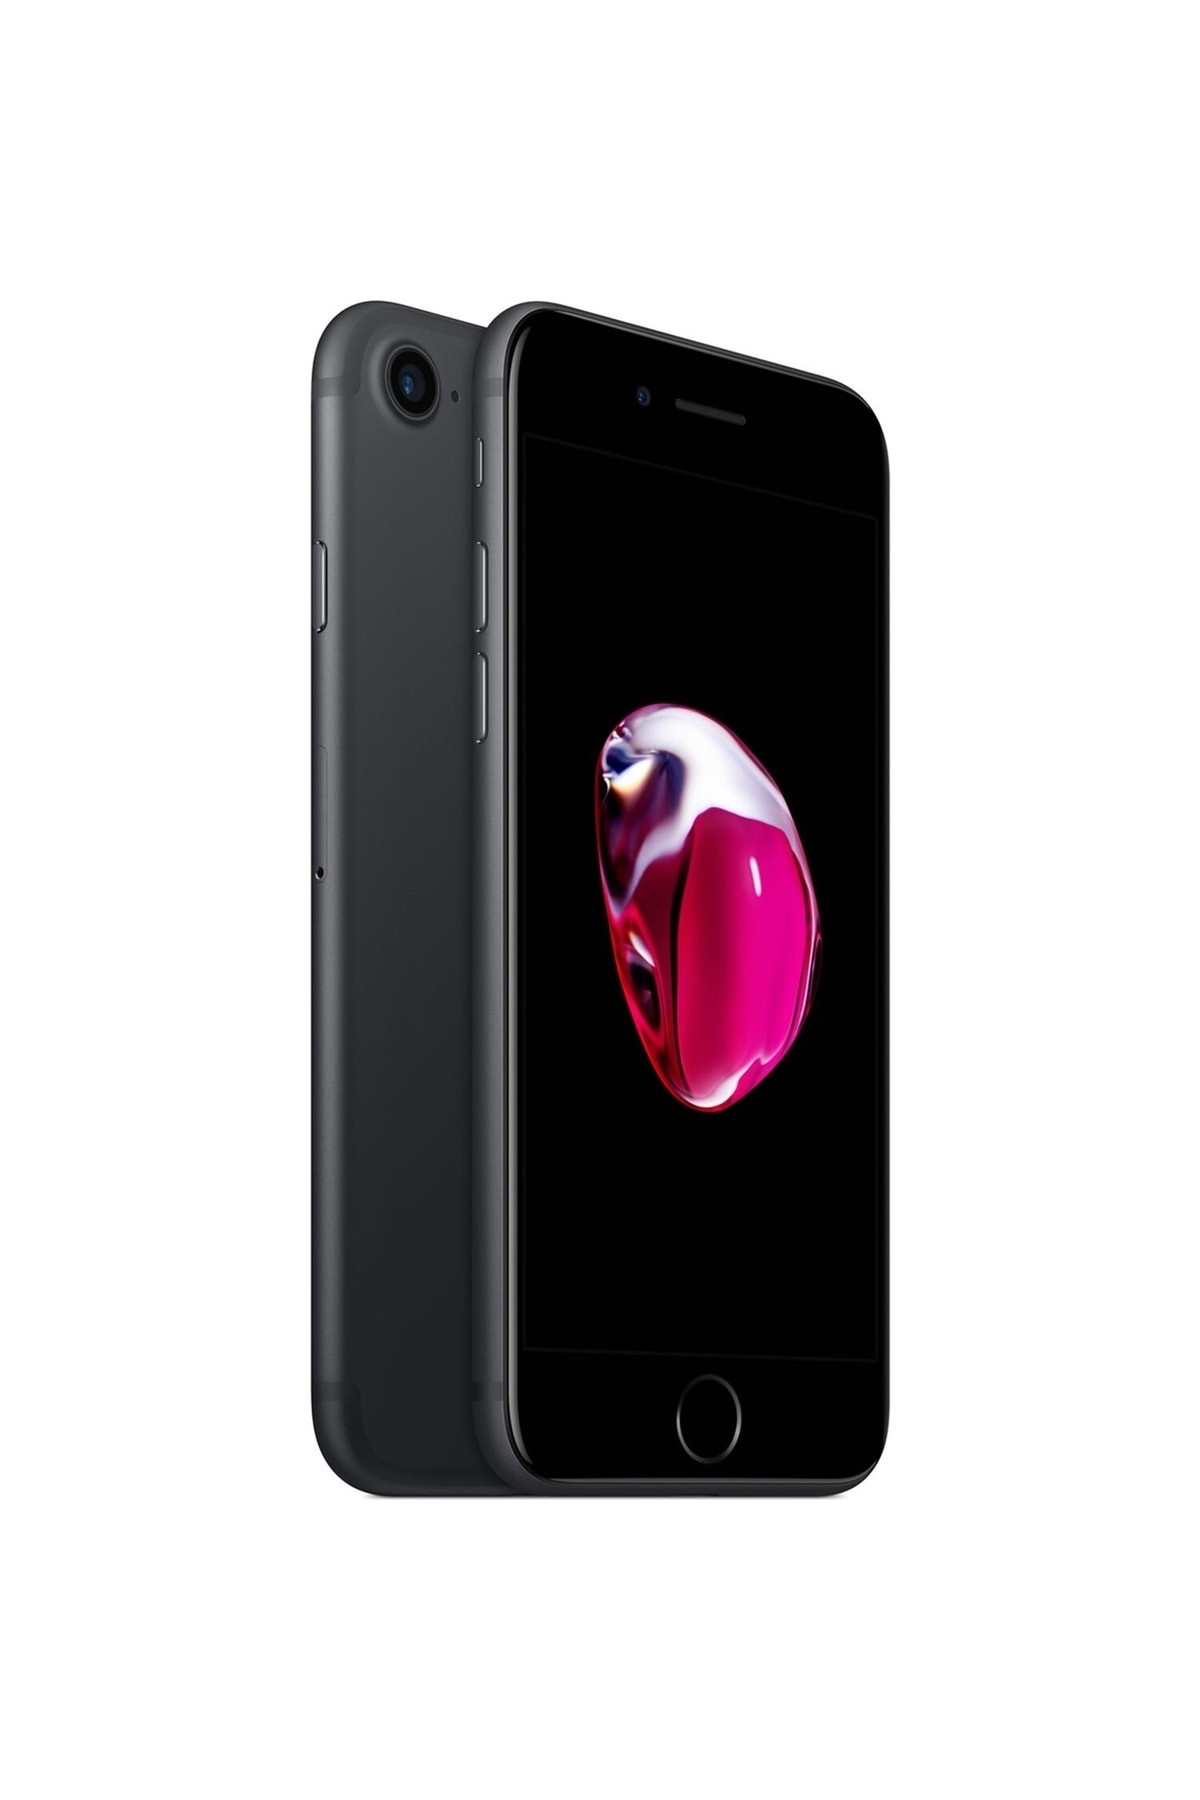 Apple Yenilenmiş Iphone 7 32 Gb Black (12 Ay Garantili) B Grade